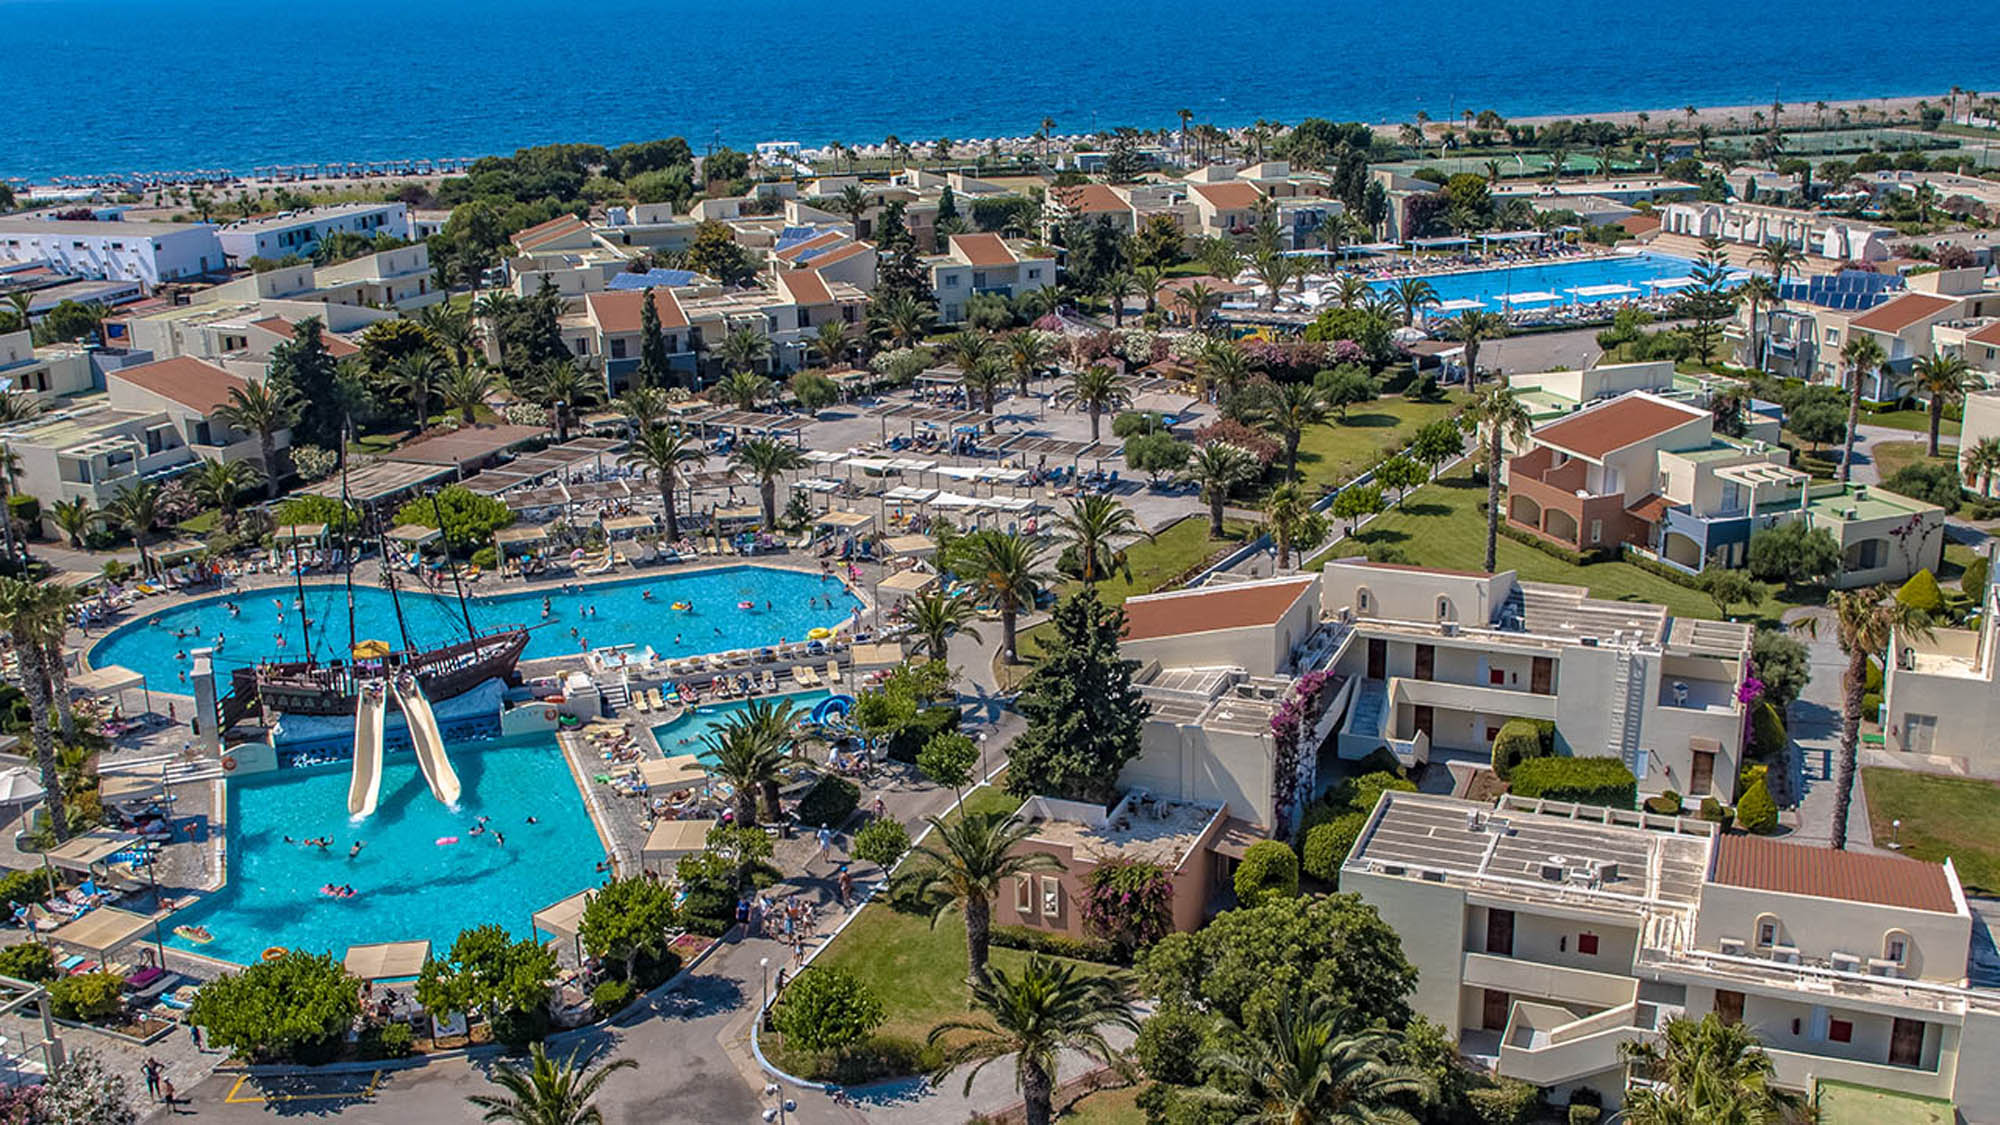 widok z lotu ptaka na hotel z basenami i aquaparkiem, w tle morze